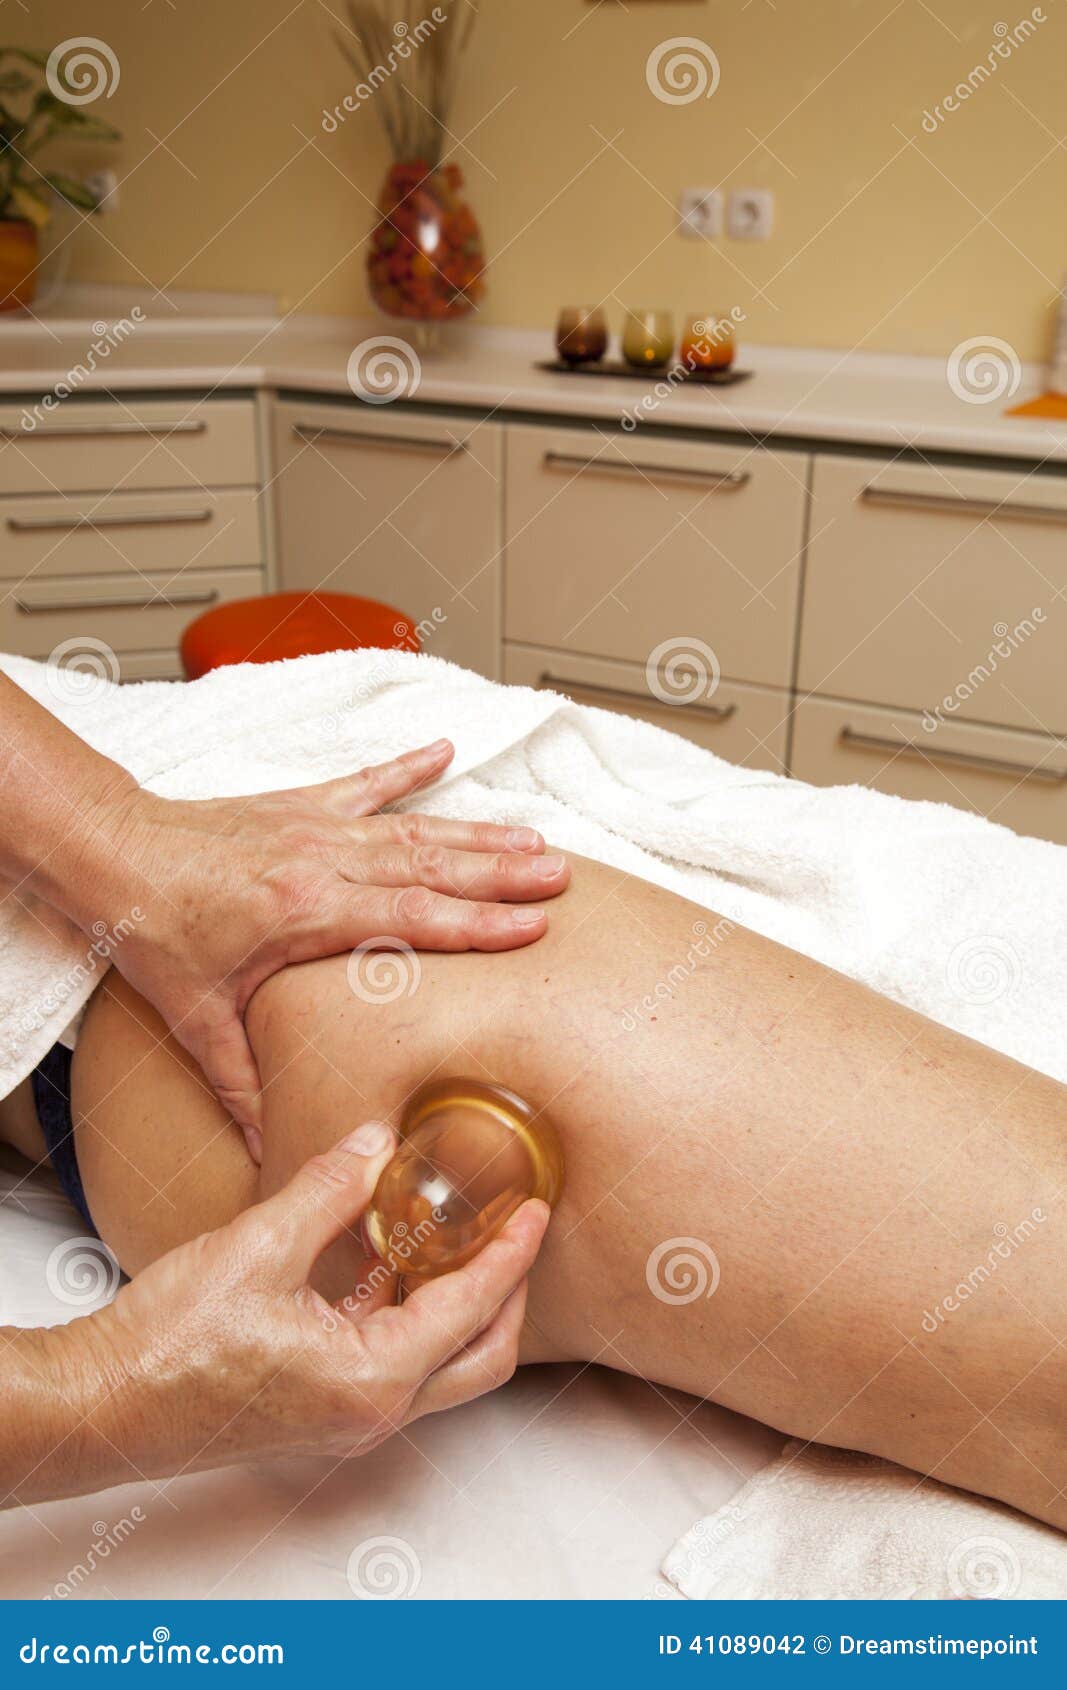 anti cellulite massage with ventuza vacuum body puller